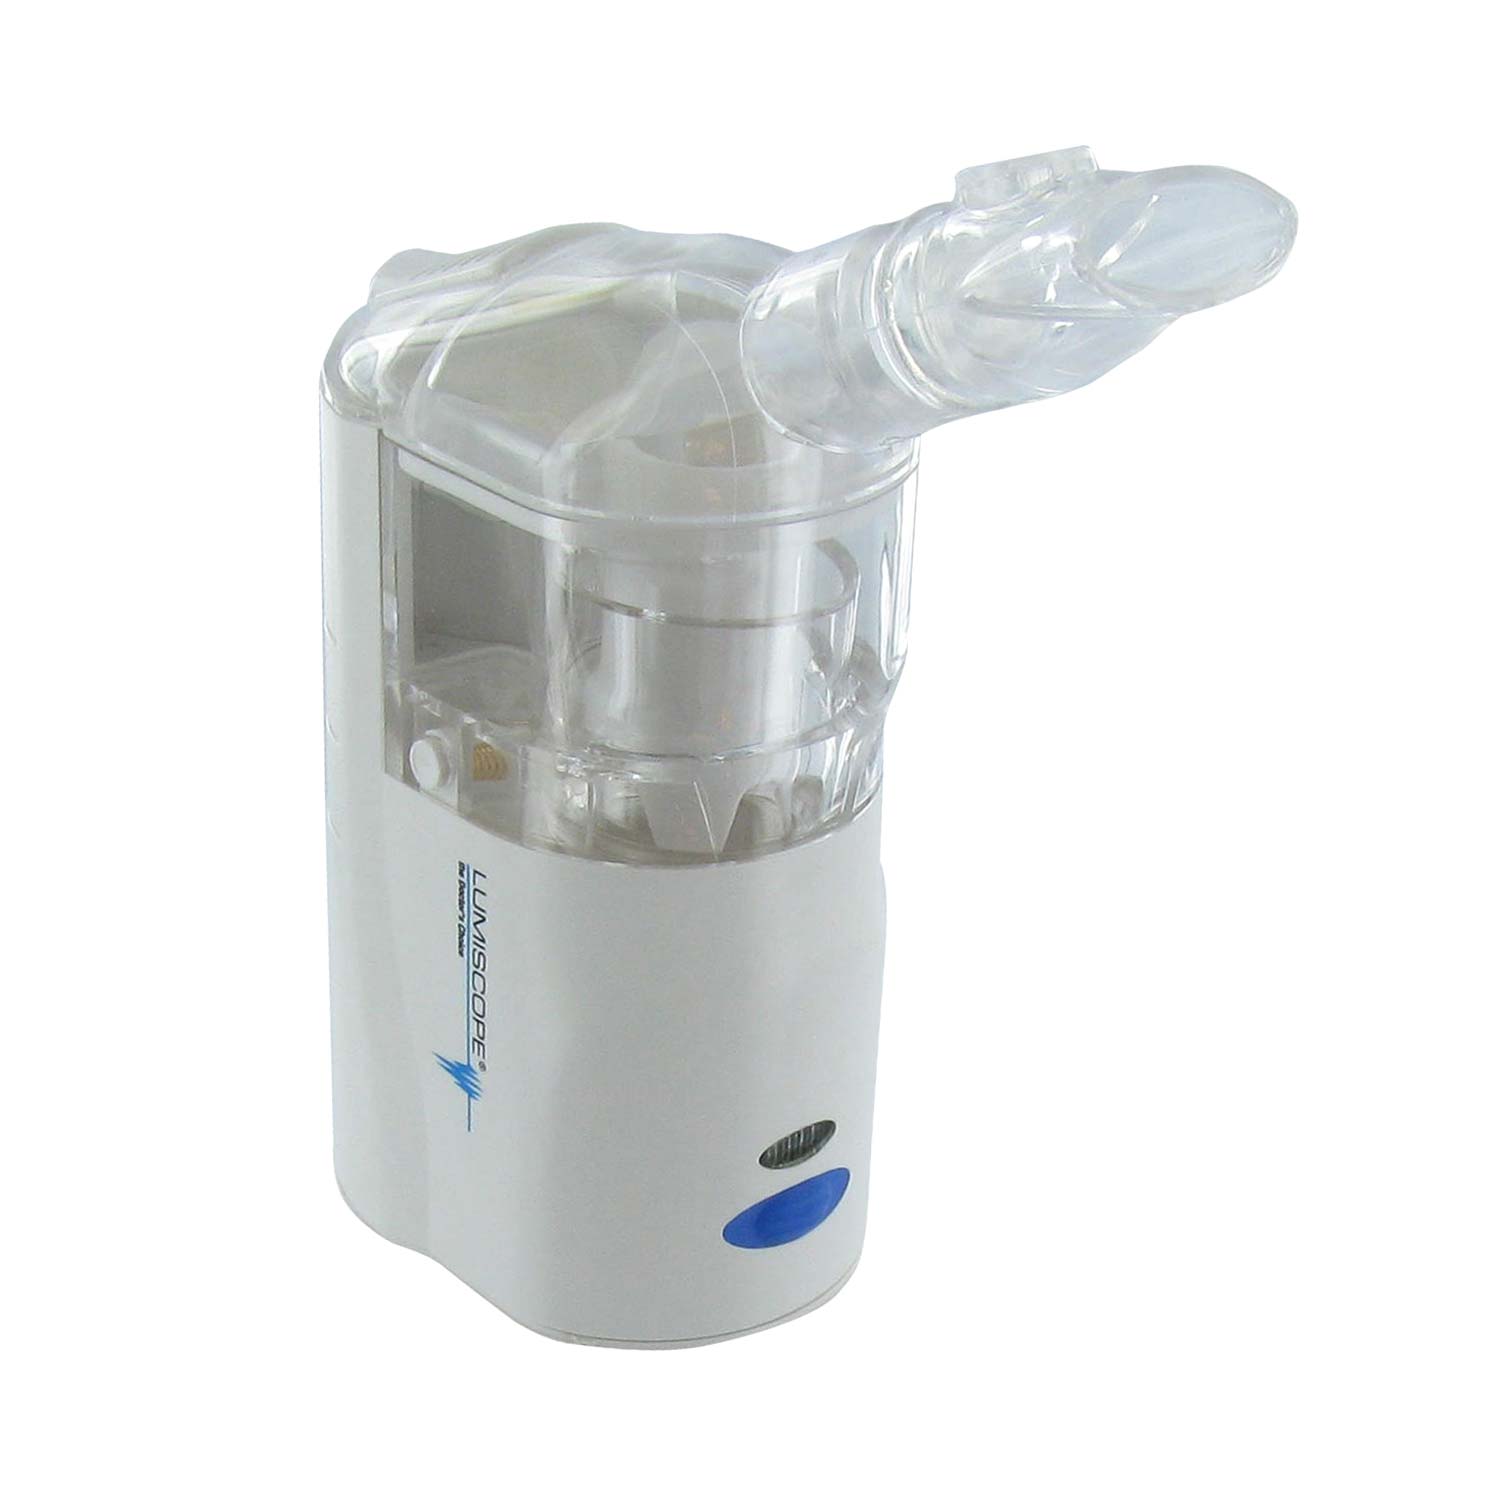 Lumiscope Portable Nebulizer